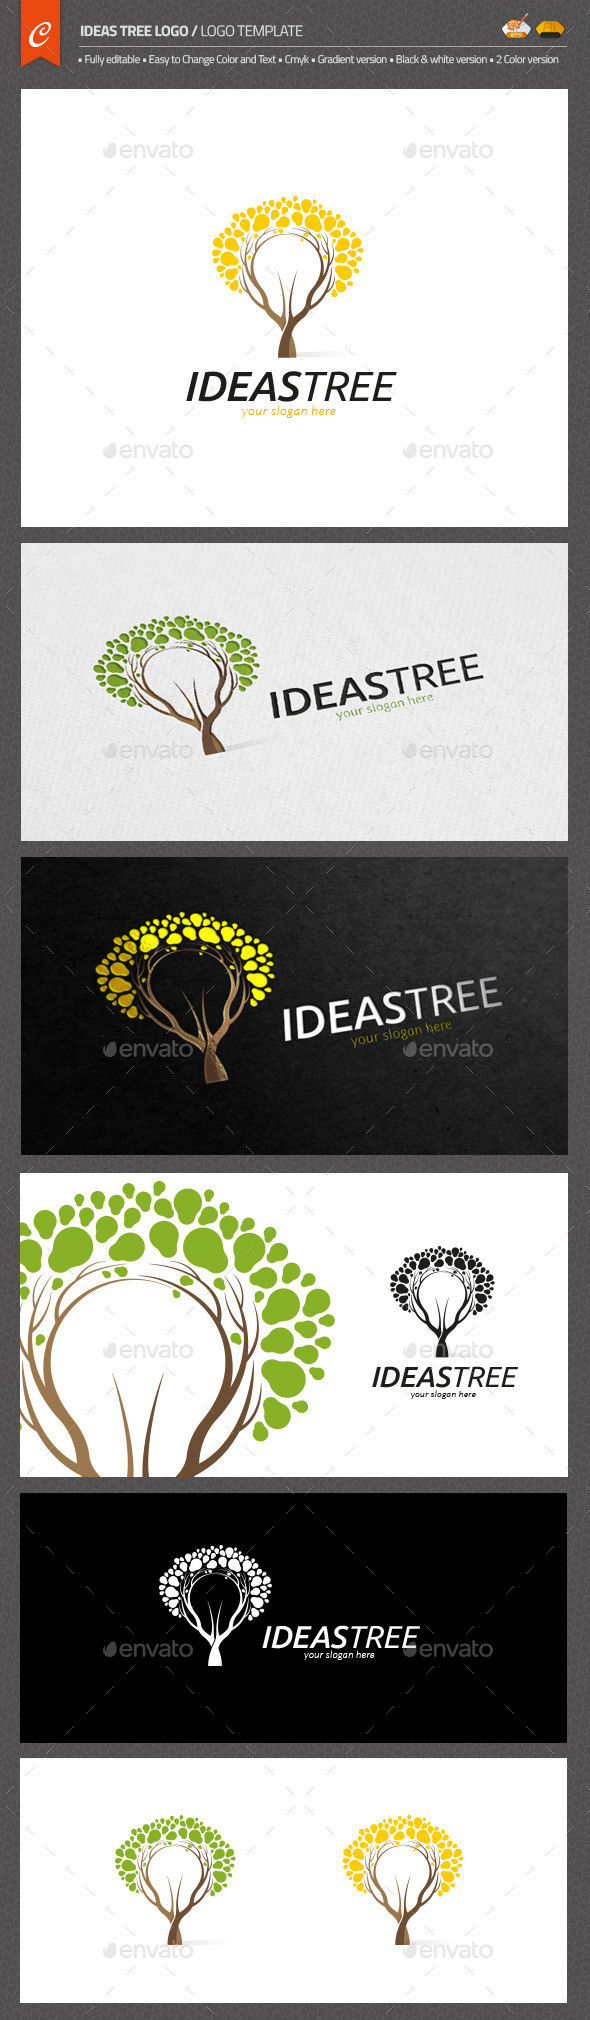 Ideas tree logo